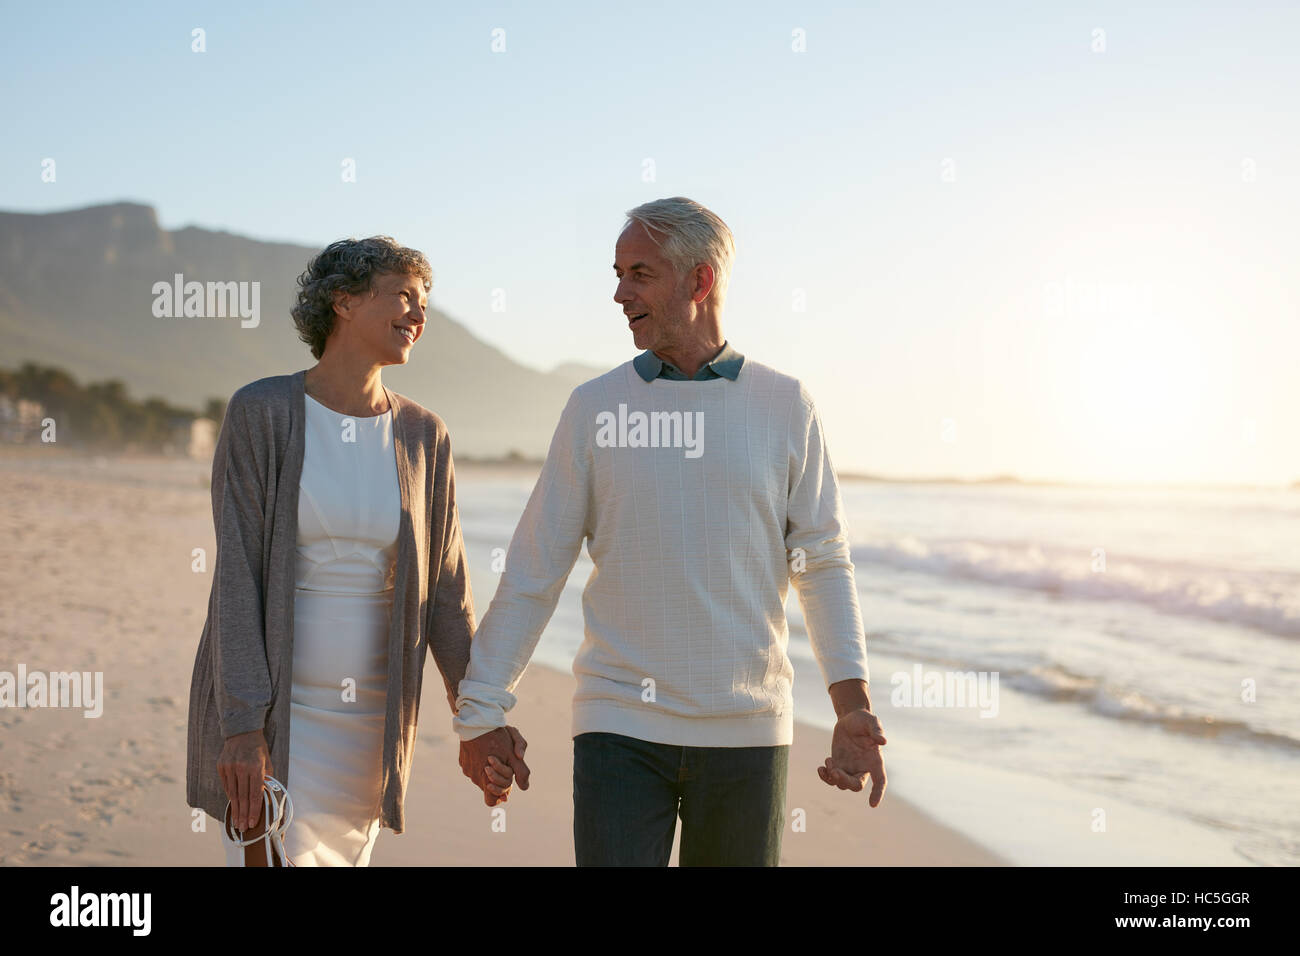 Porträt des romantischen älteres Paar gehen Hand in Hand am Strand. Älteres Paar mit einem Spaziergang am Ufer Meeres zu lieben. Stockfoto